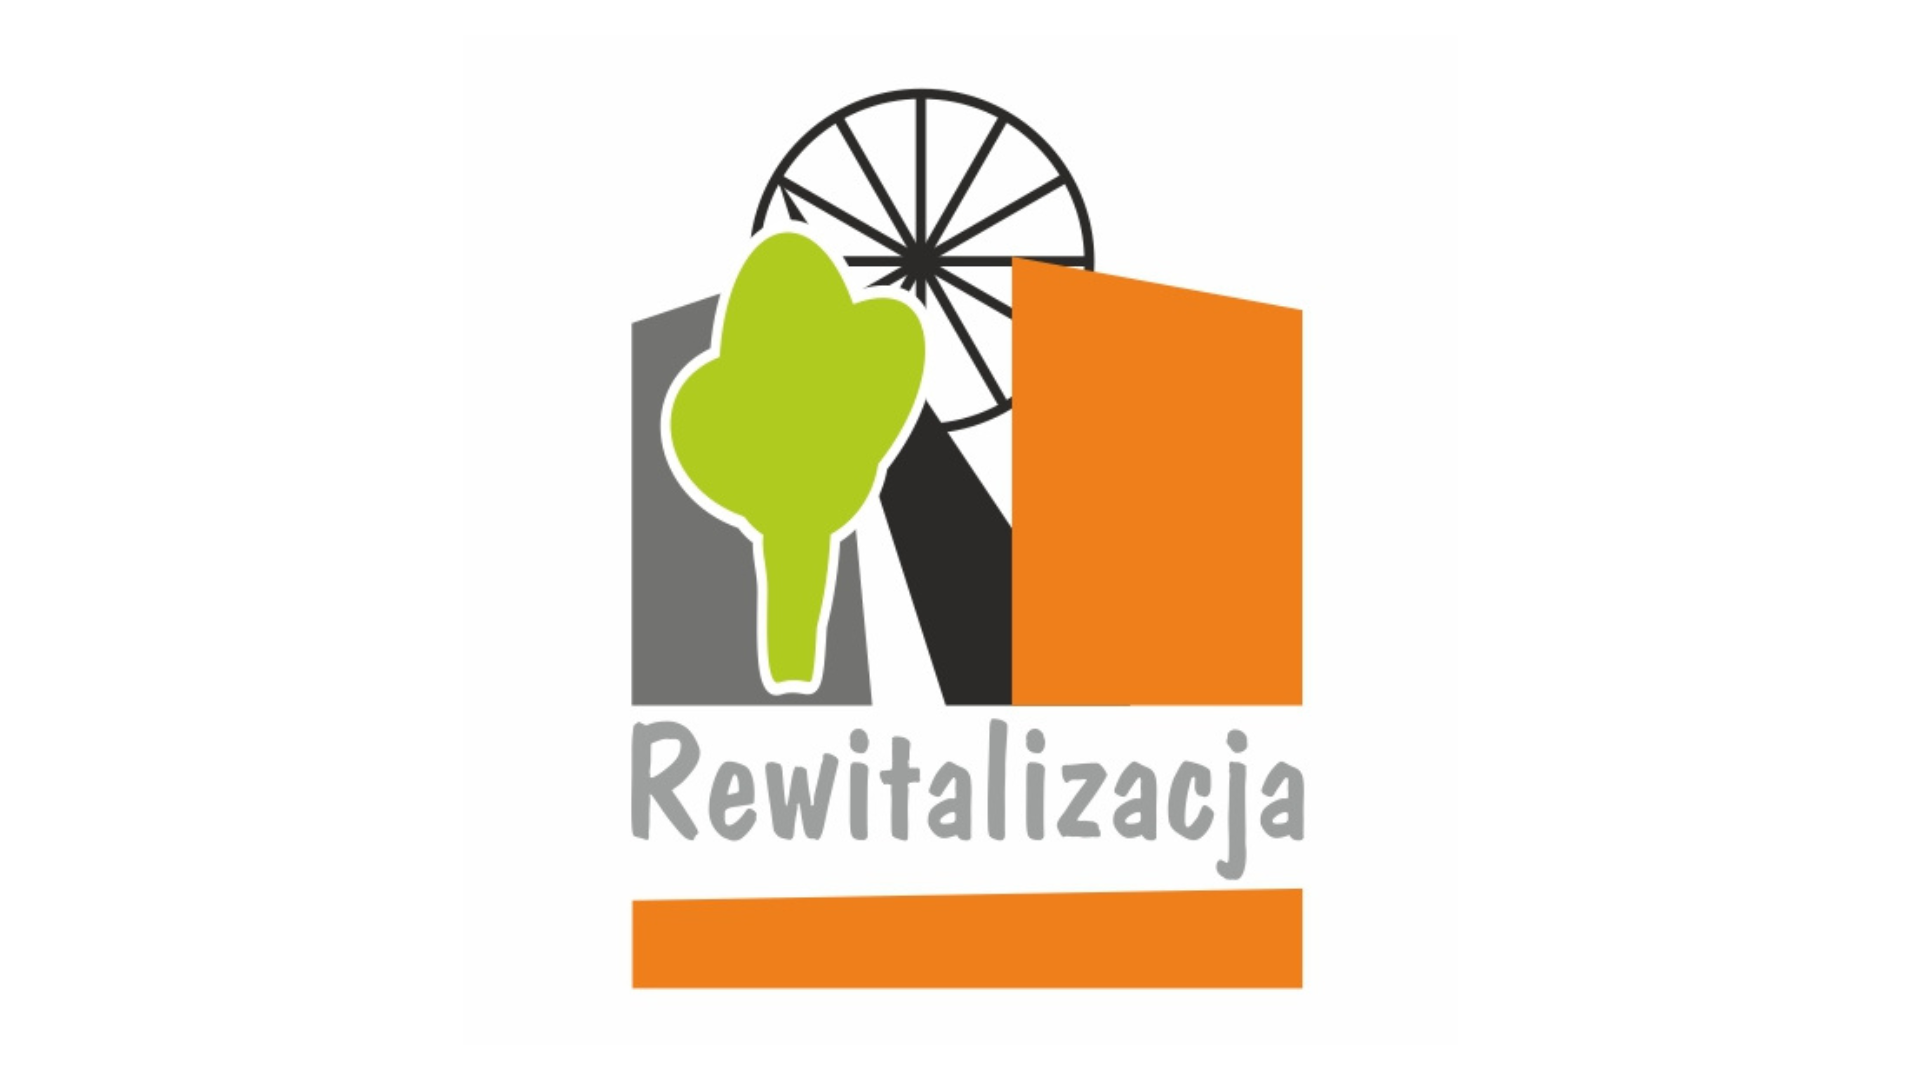 Logotyp: symbole drzewa i szybu kopalnianego, napis "rewitalizacja".